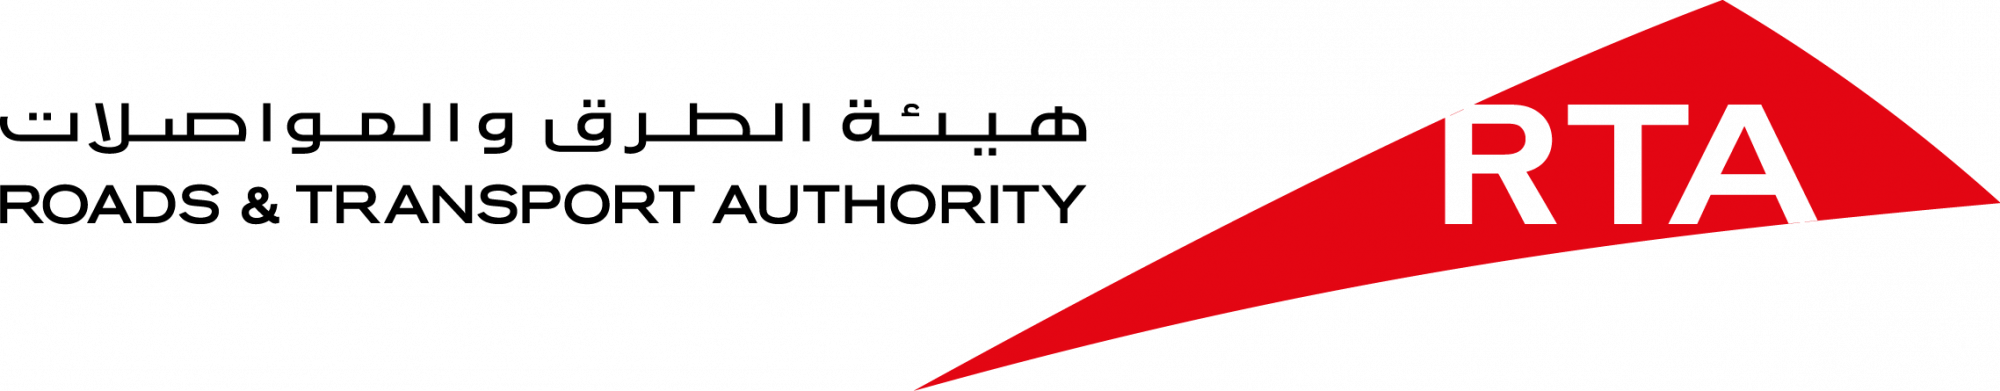 RTA-Logo-Full-2000x391